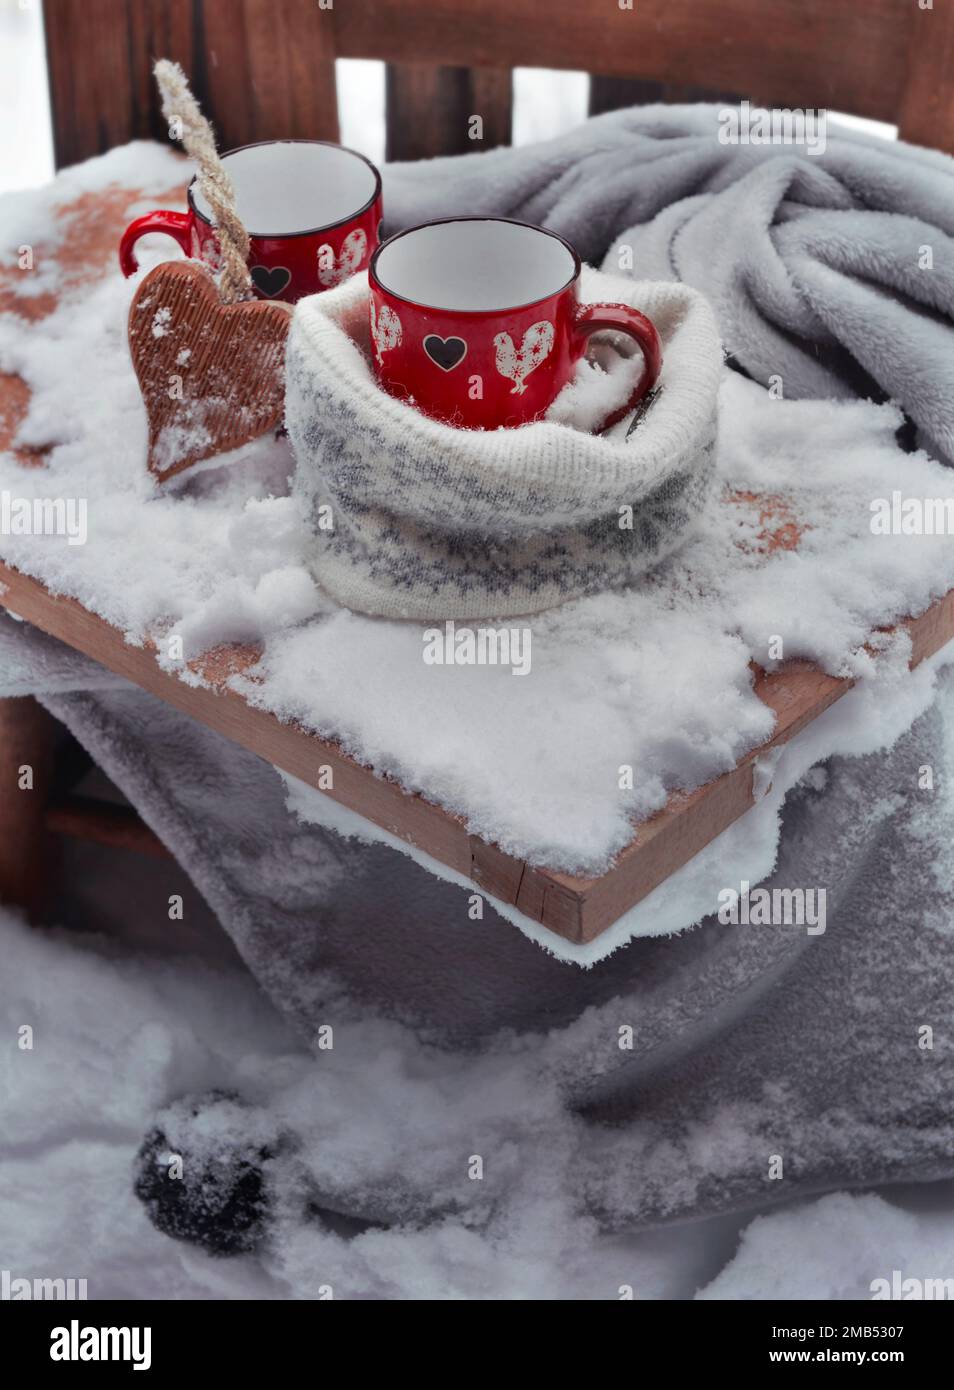 Zwei rote Tassen mit Herzform auf einer Planke, die auf einem karierten Schneefall auf der Terrasse platziert wird Stockfoto